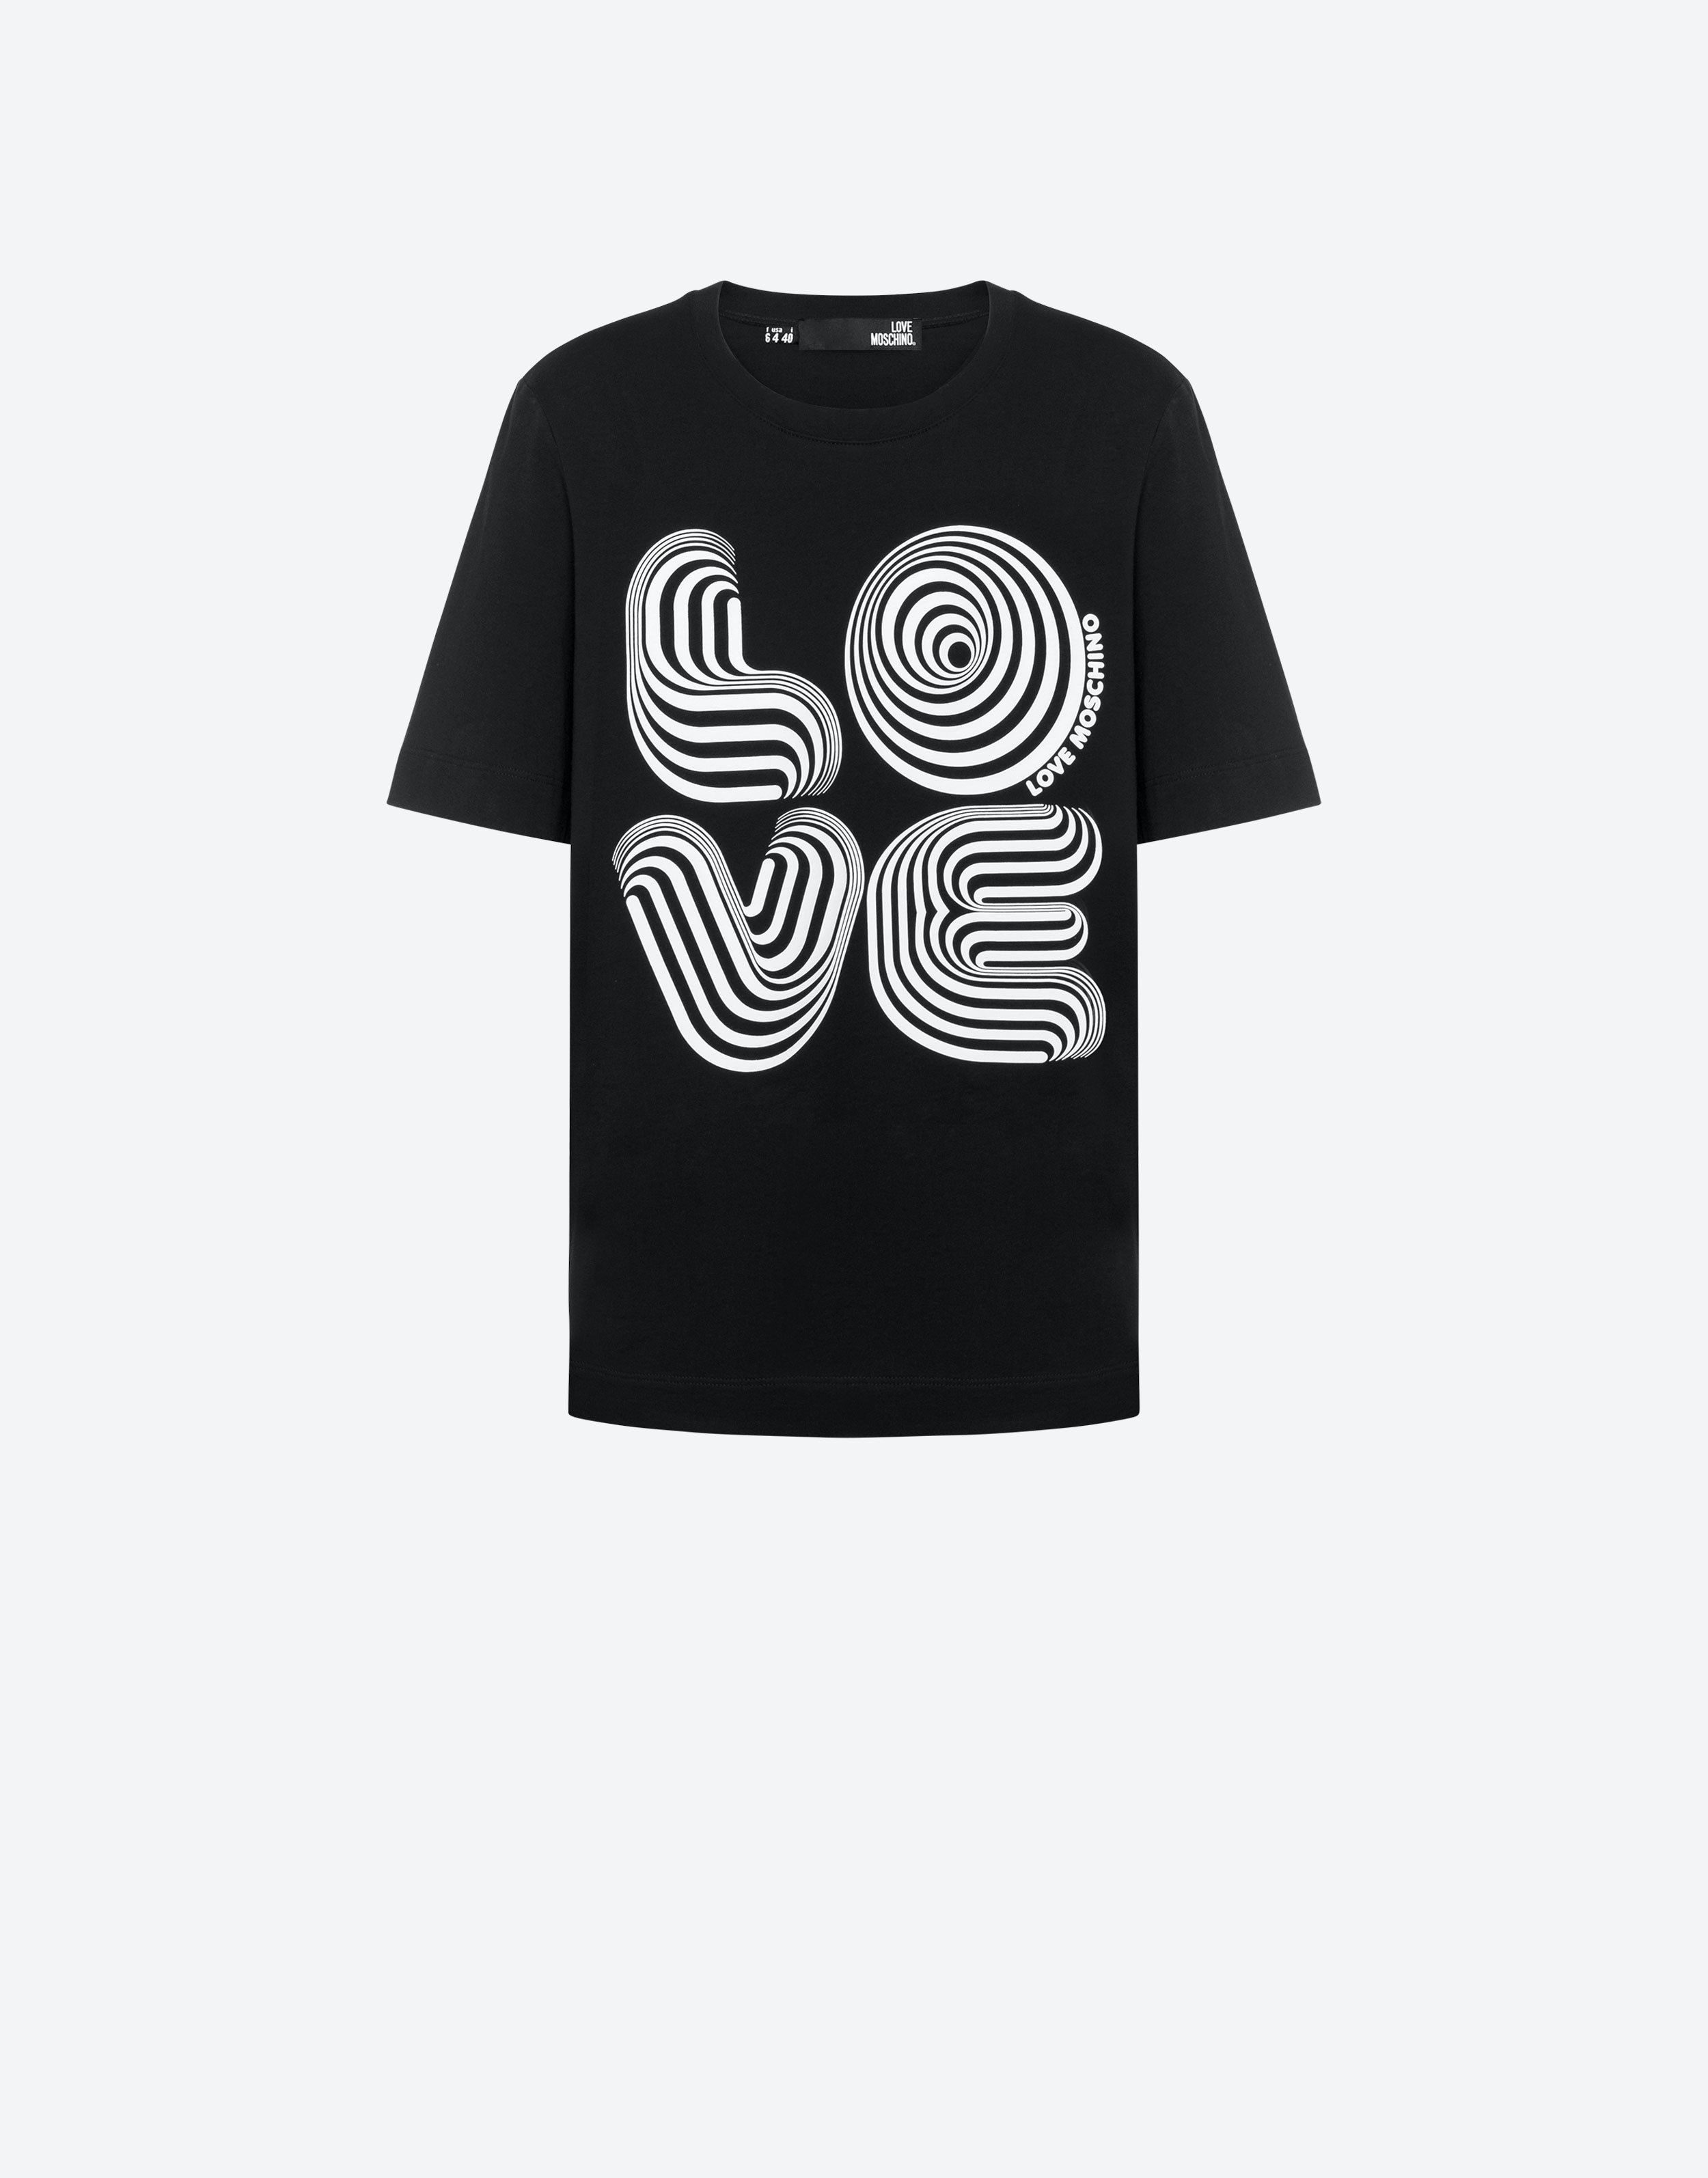 Cotton jersey Pop Art Zippers T-shirt | Moschino Official Store